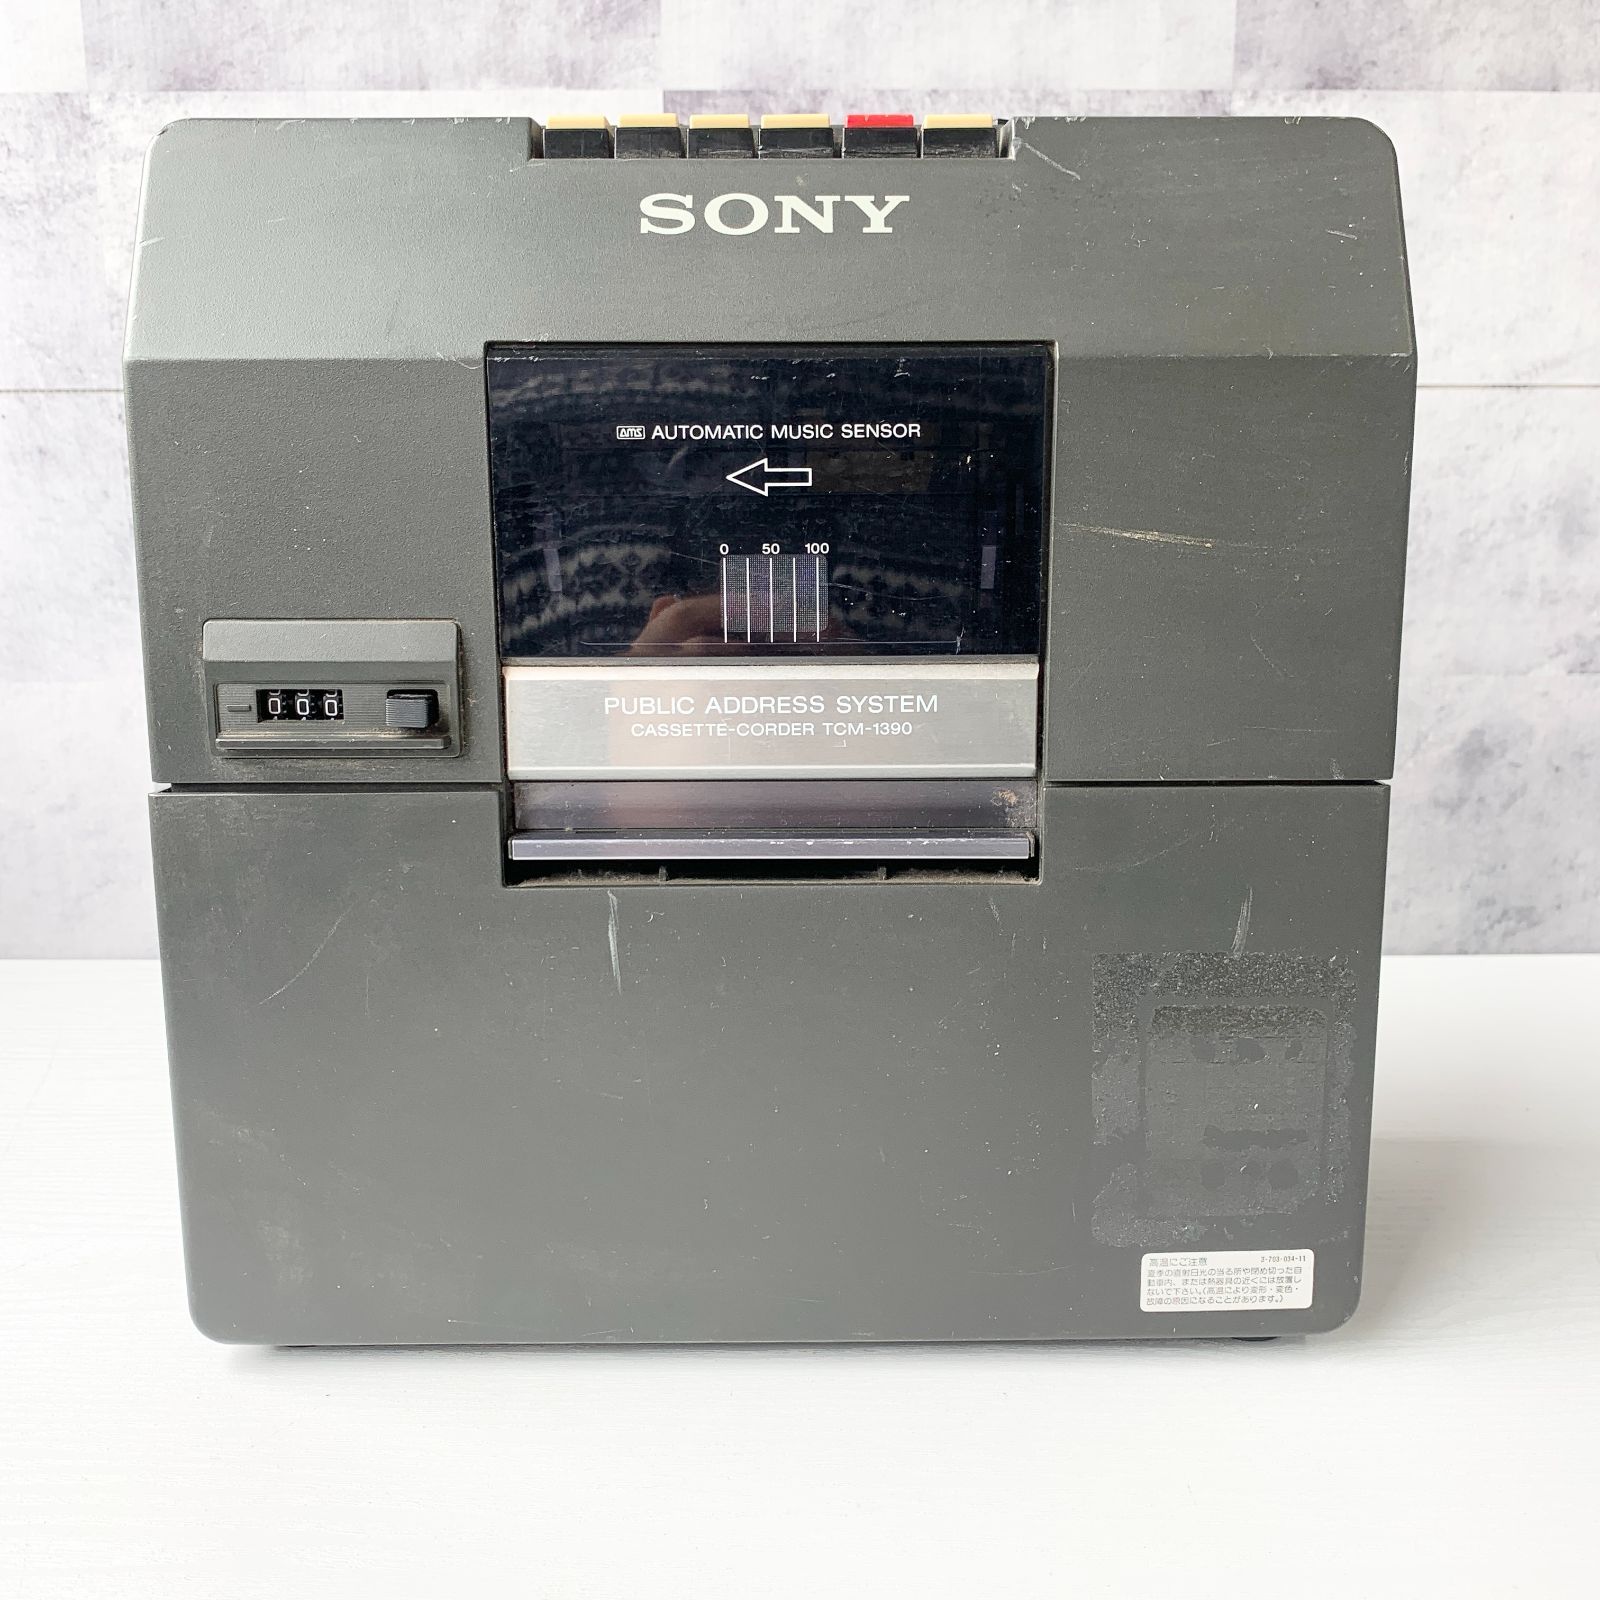 ソニー SONY TCM-1390 カセットテープレコーダー モノラル 業務用 拡声機能 マイク端子 外部出力 スピーカー ライン入力 ポータブル  昭和レトロ - メルカリ